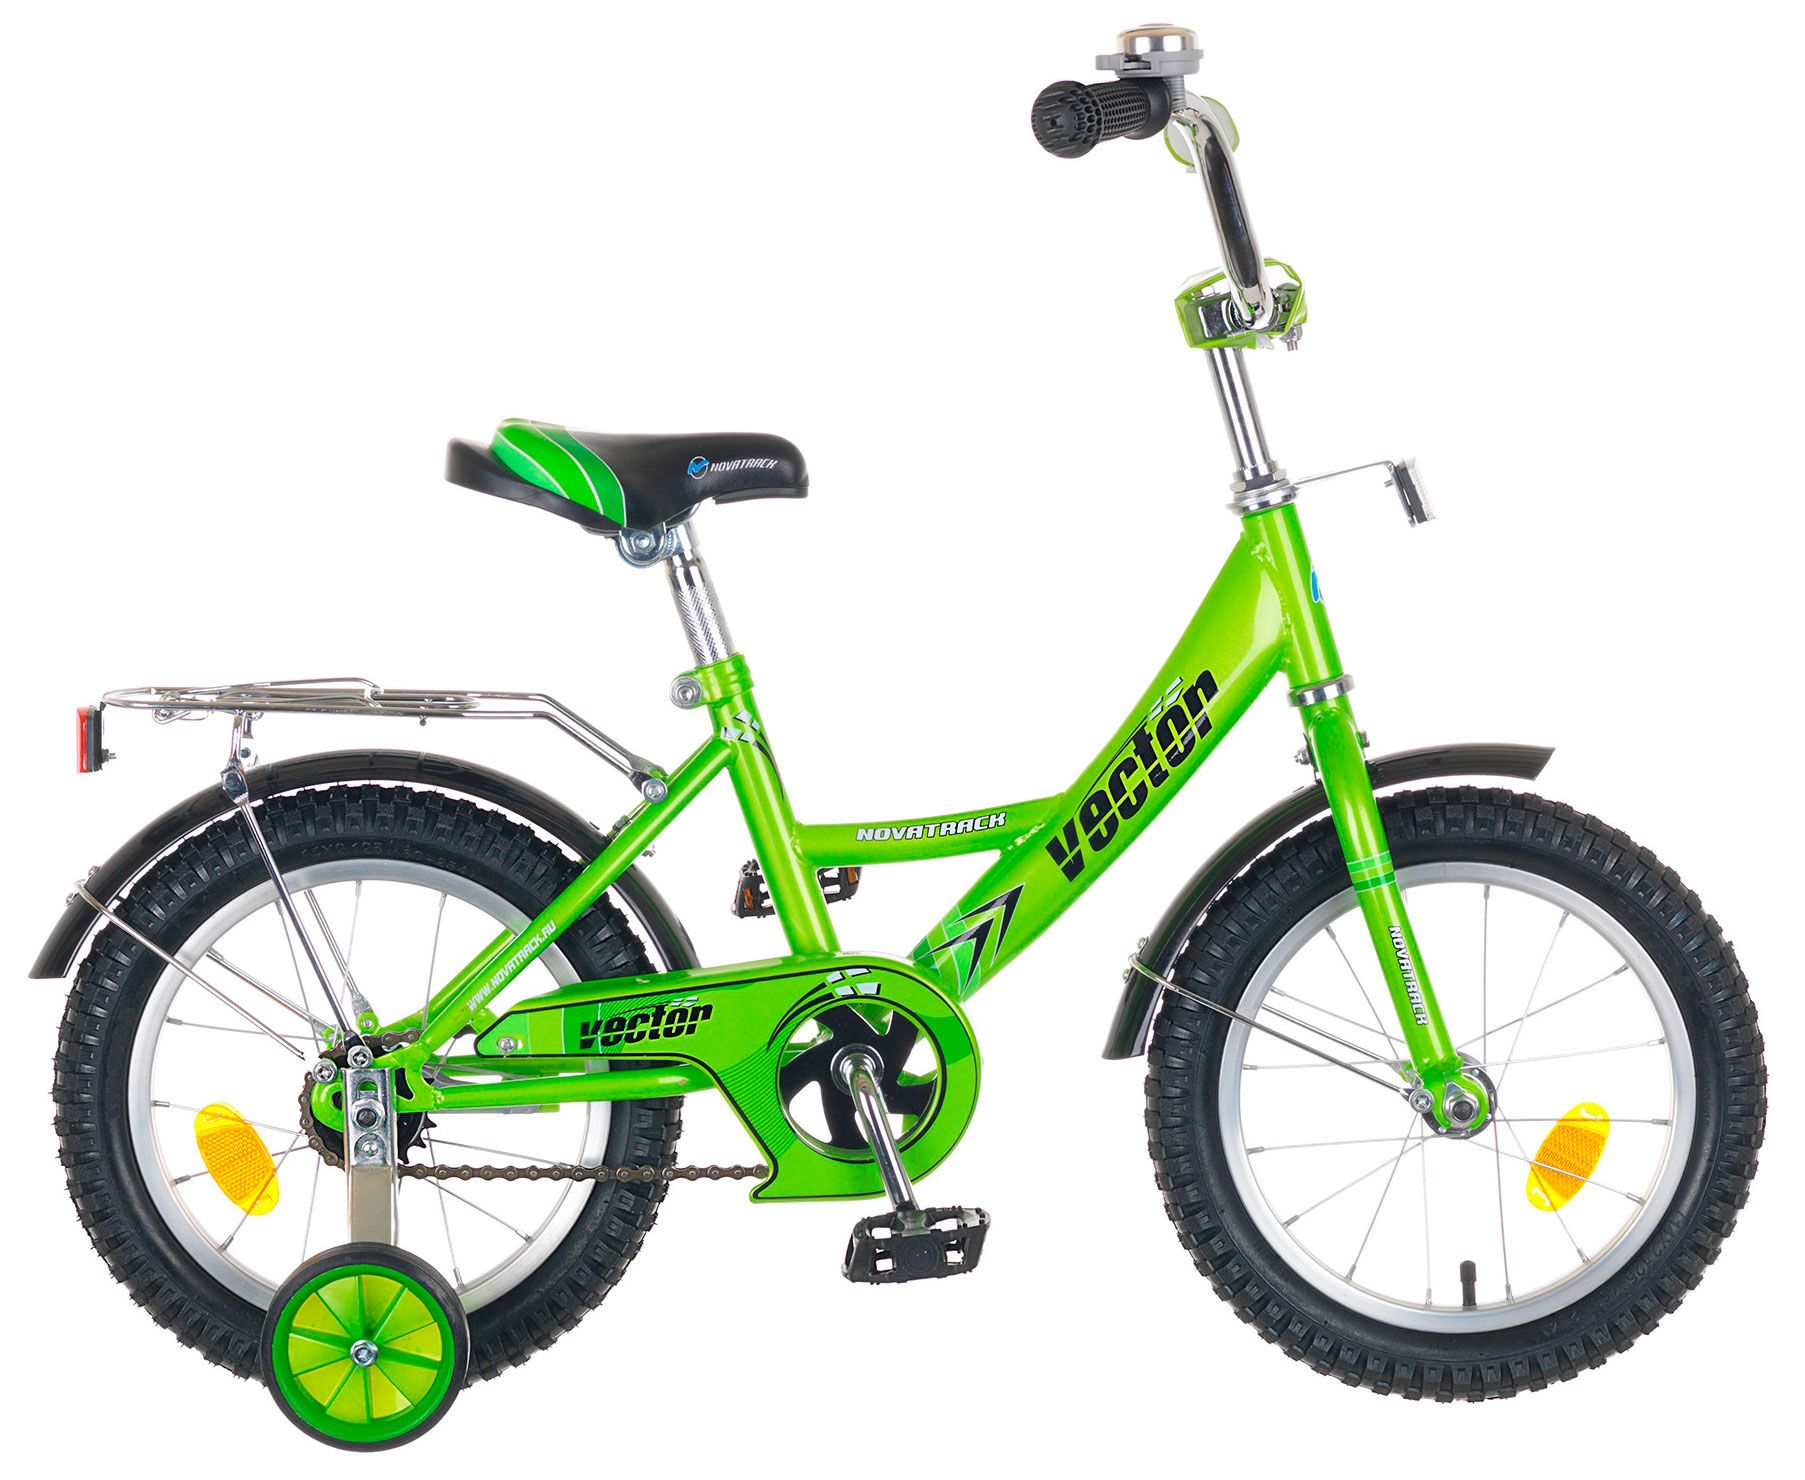  Отзывы о Трехколесный детский велосипед Novatrack Vector 14 2018